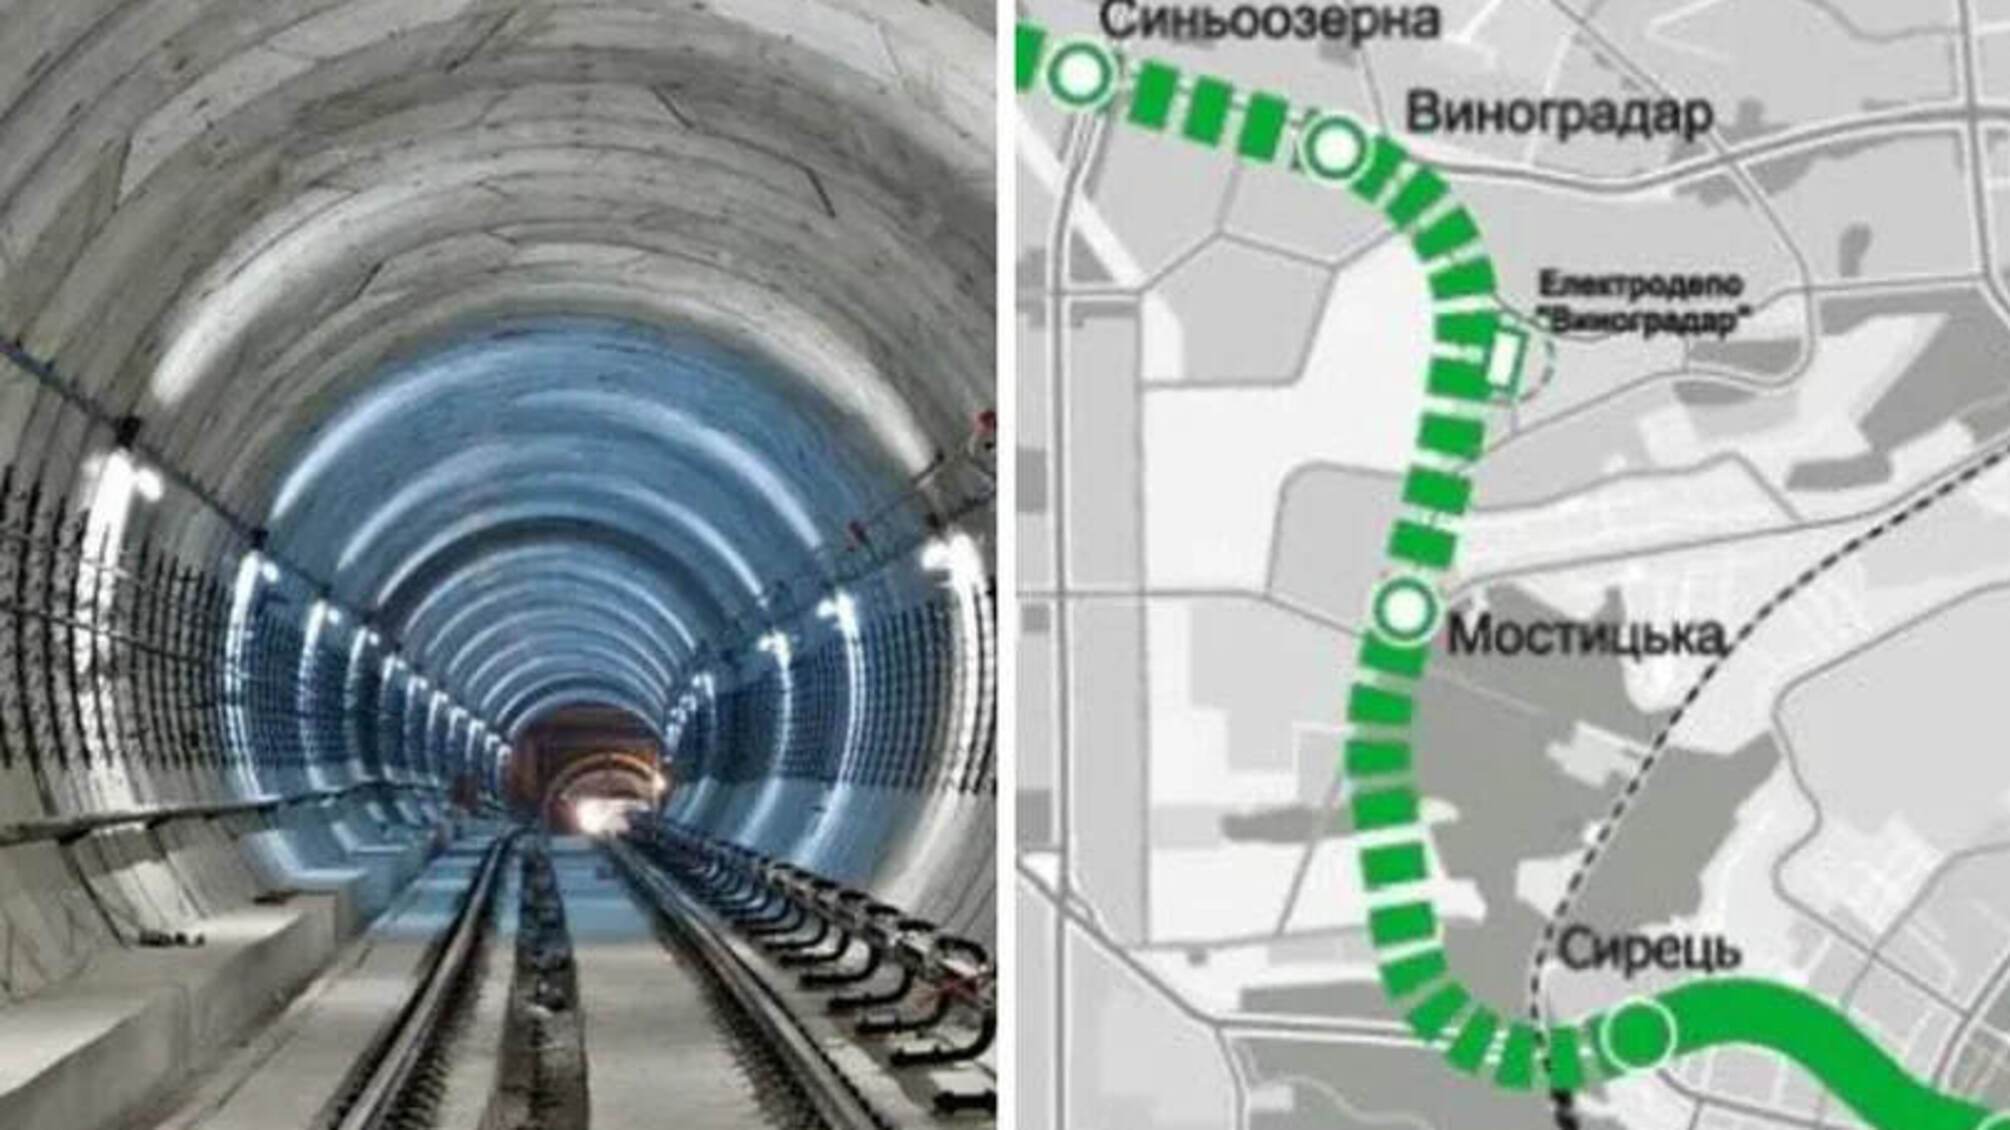 метро на Виногардарь